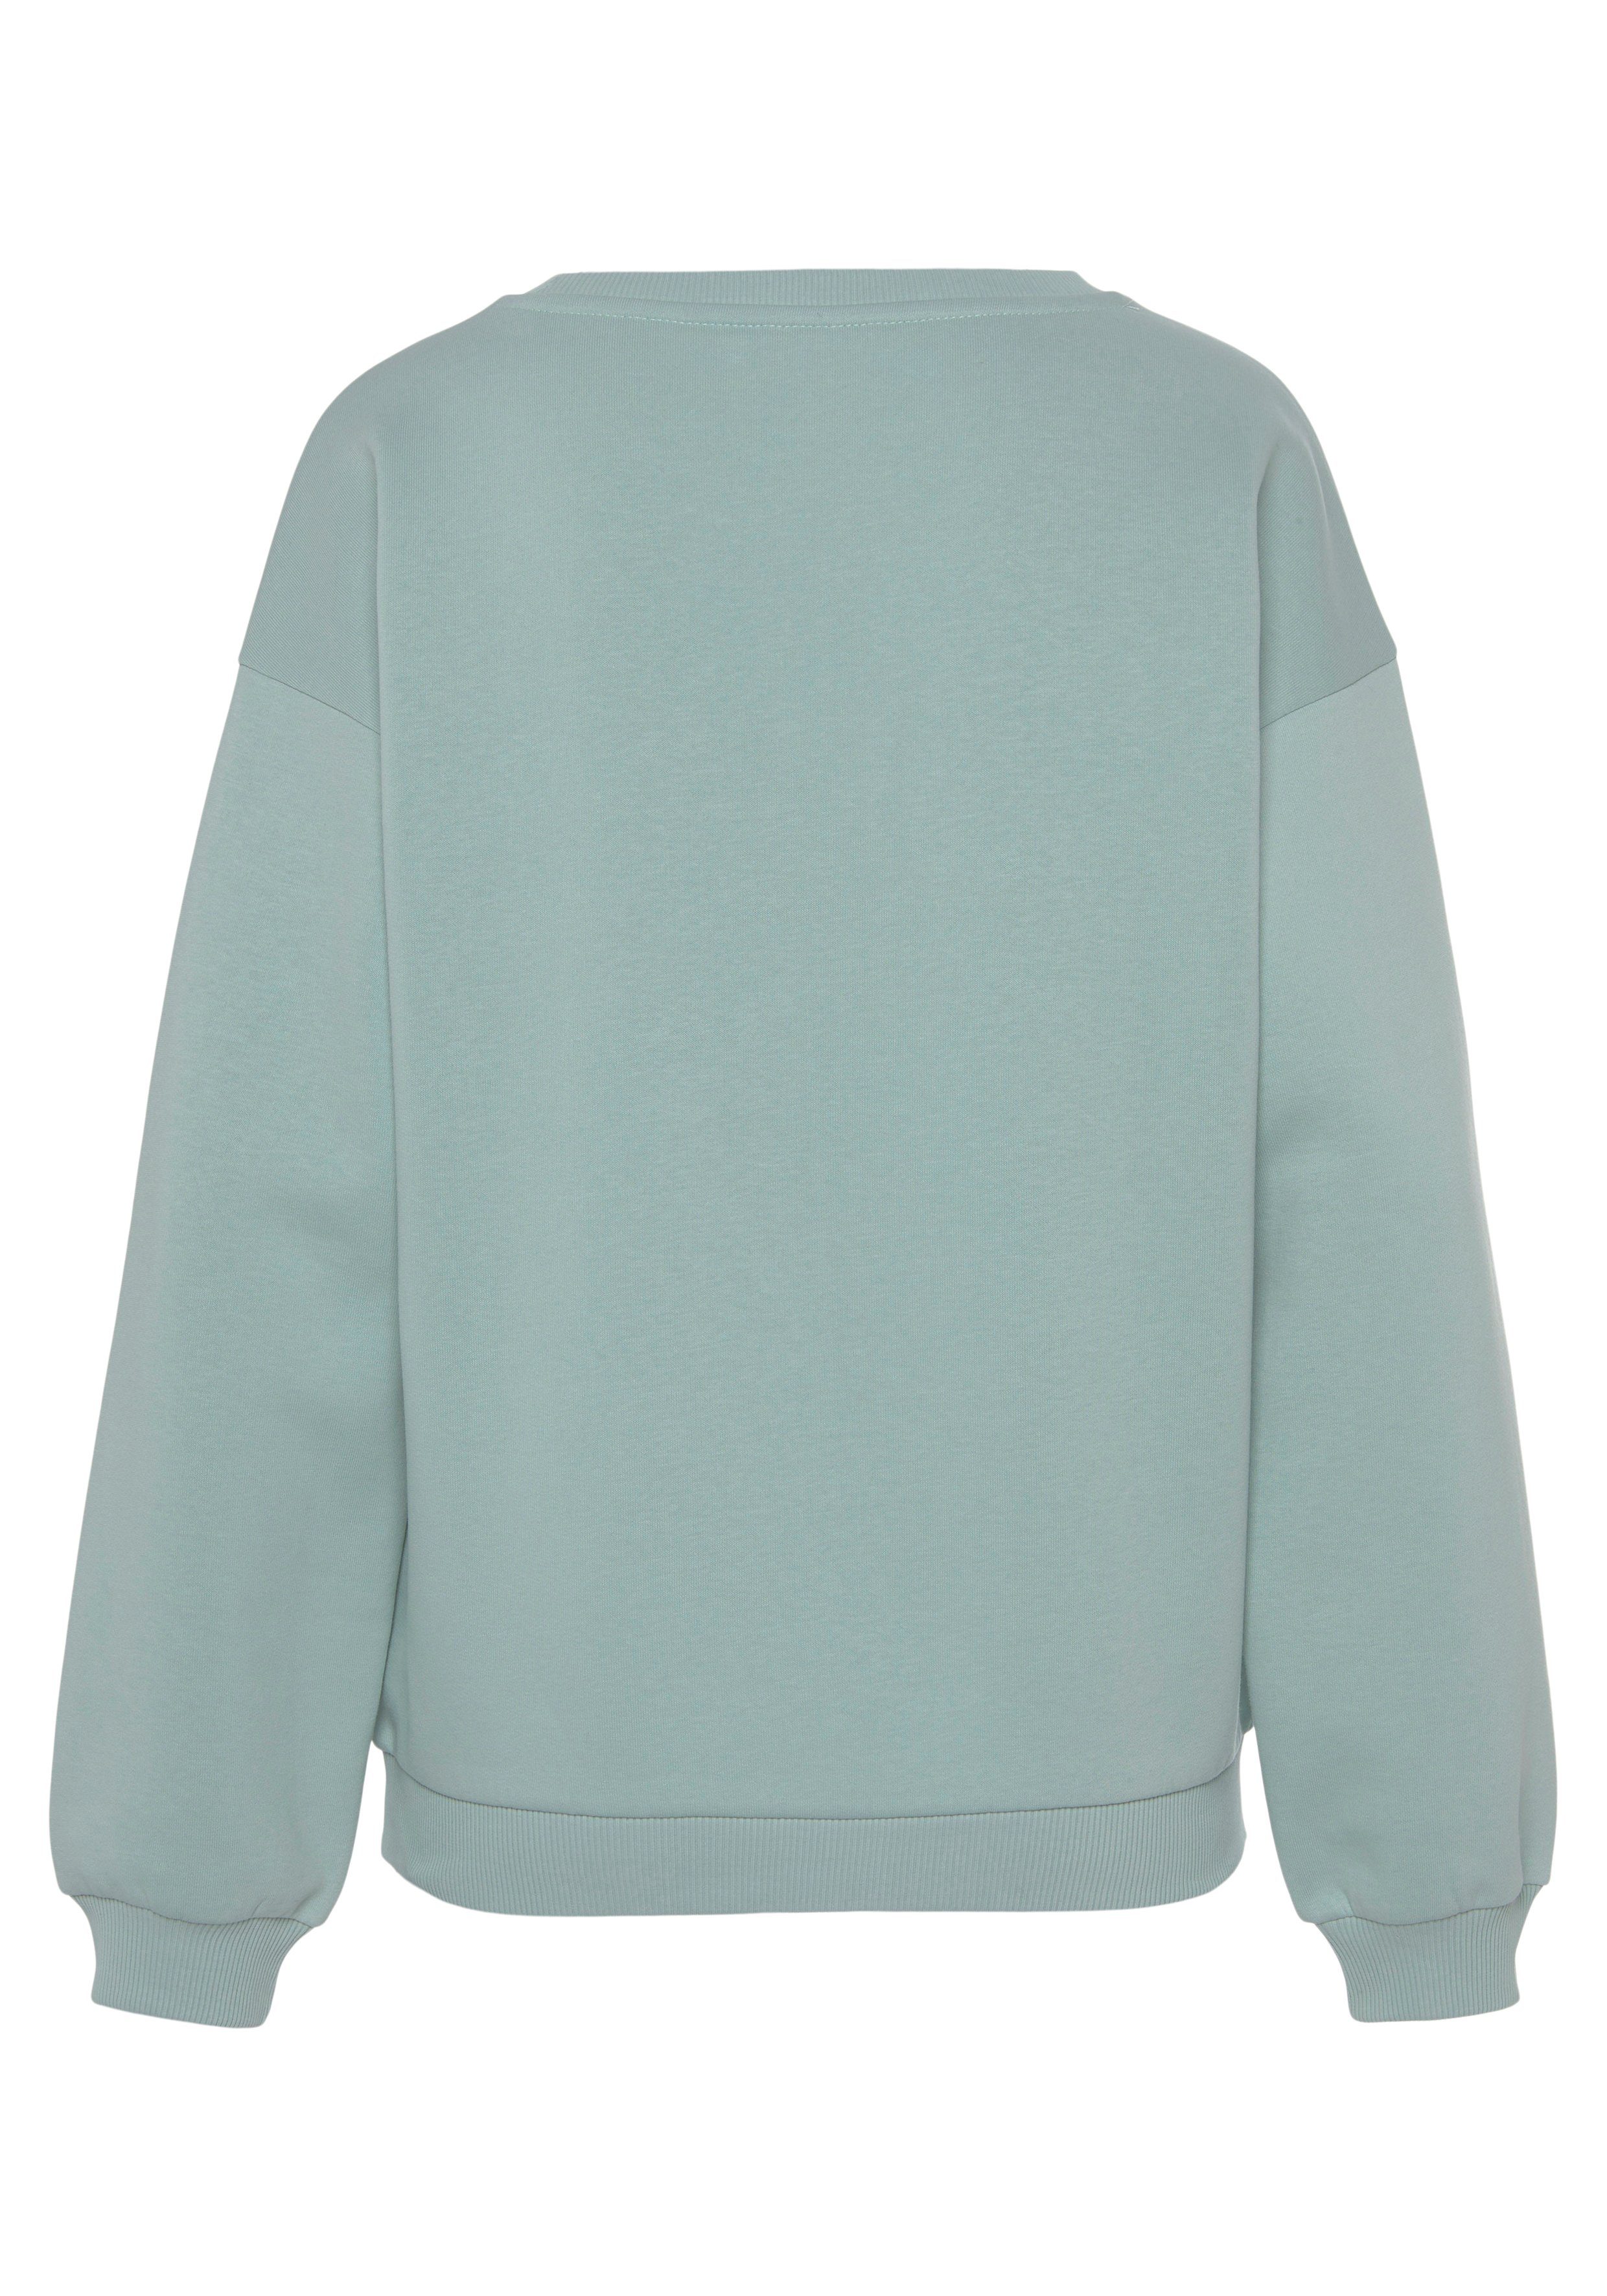 Ärmeln, -Pullover Sweatshirt mint mit Loungewear, LASCANA Loungeanzug weiten